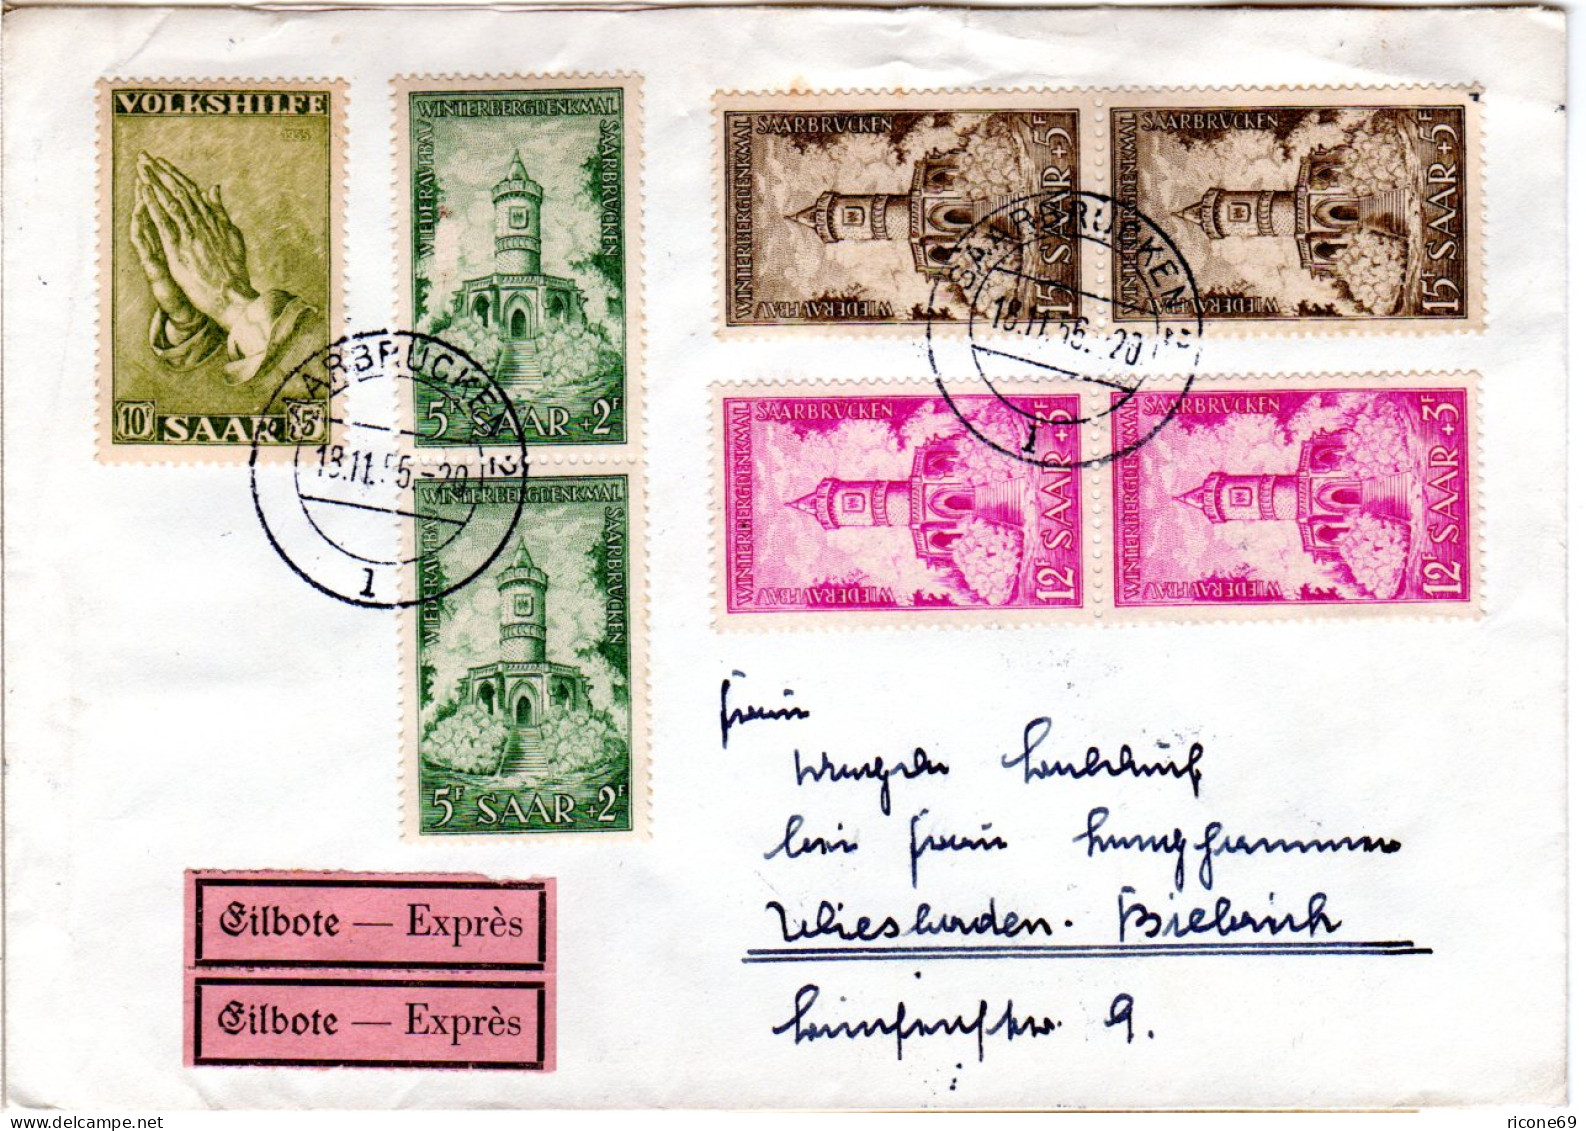 Saarland 1956, 7 Zuschlagmarken Auf Eilboten Brief V. Saarbrücken N. Wiesbaden. - Covers & Documents